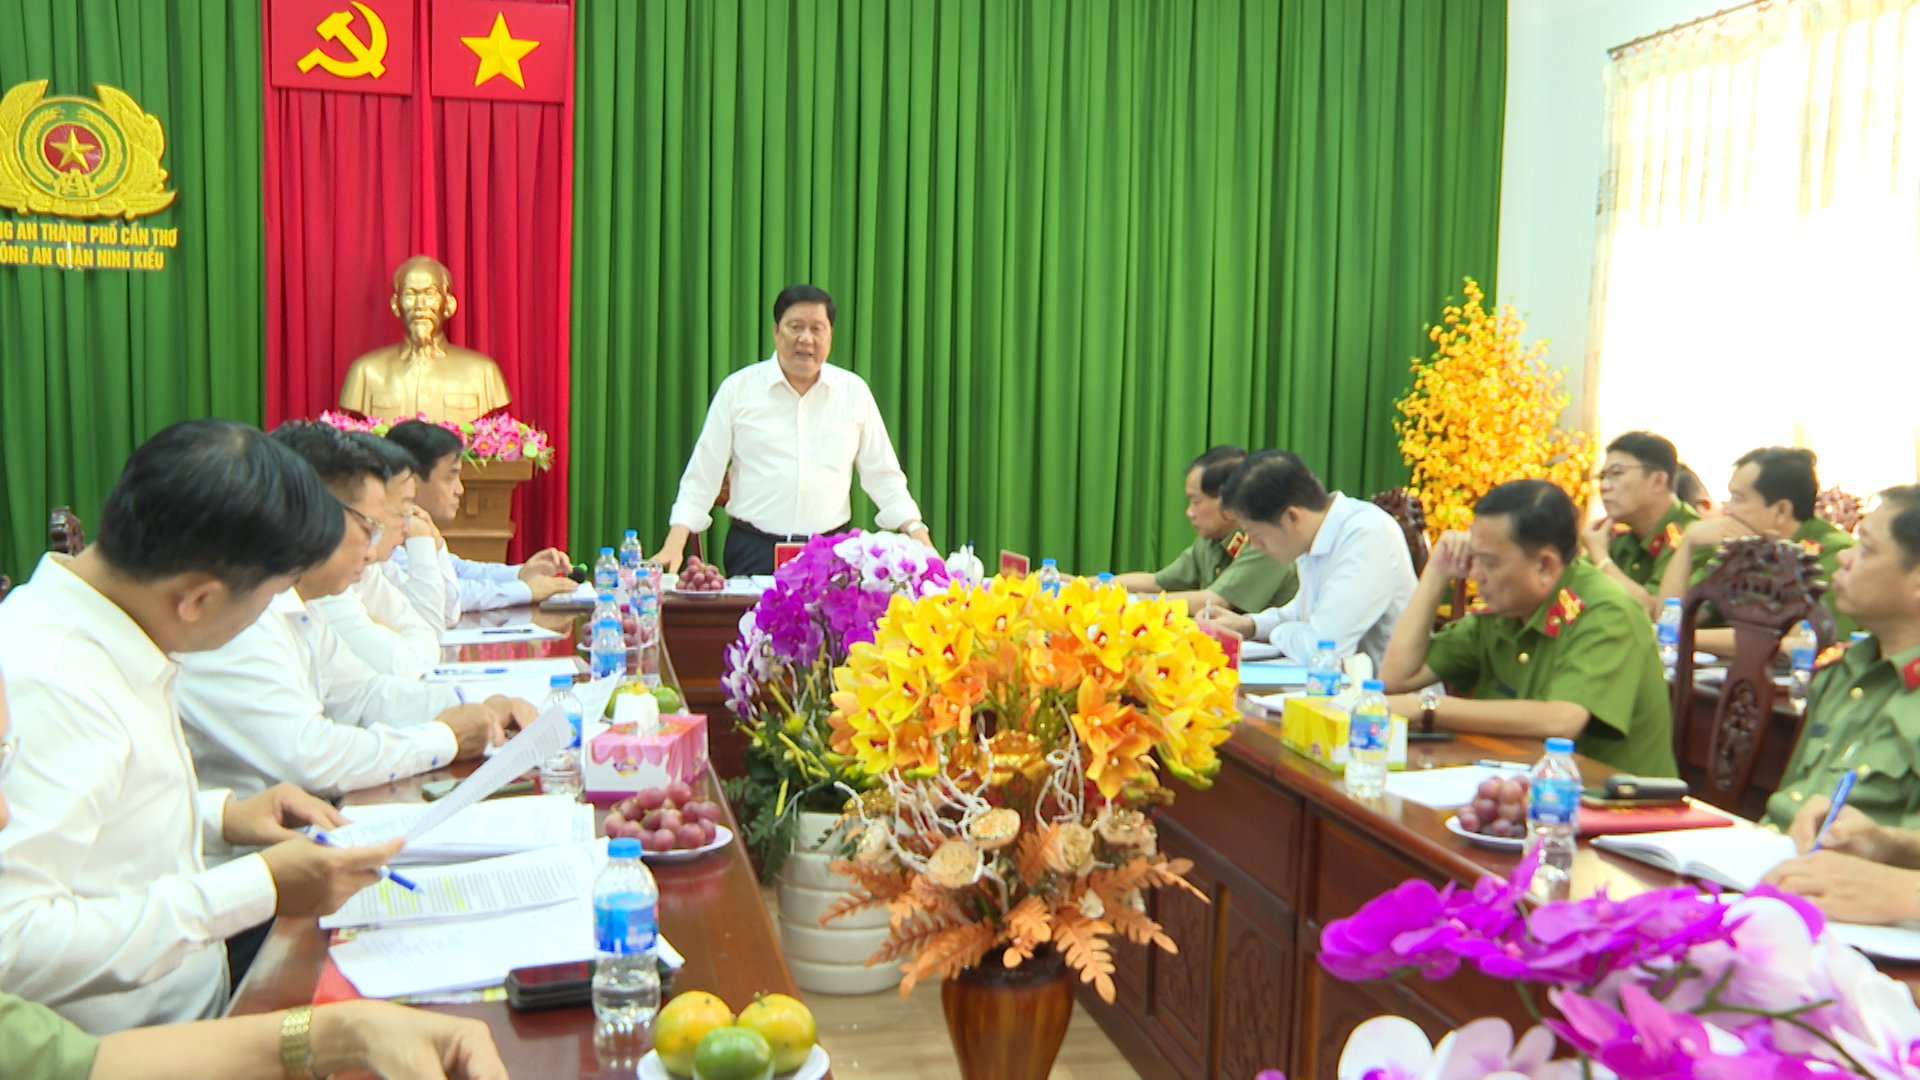 Hình 3: Đồng chí Phạm Văn Hiểu, Phó Bí thư thường trực Thành uỷ - Chủ tịch HĐND Thành phố Cần Thơ phát biểu tại buổi làm việc